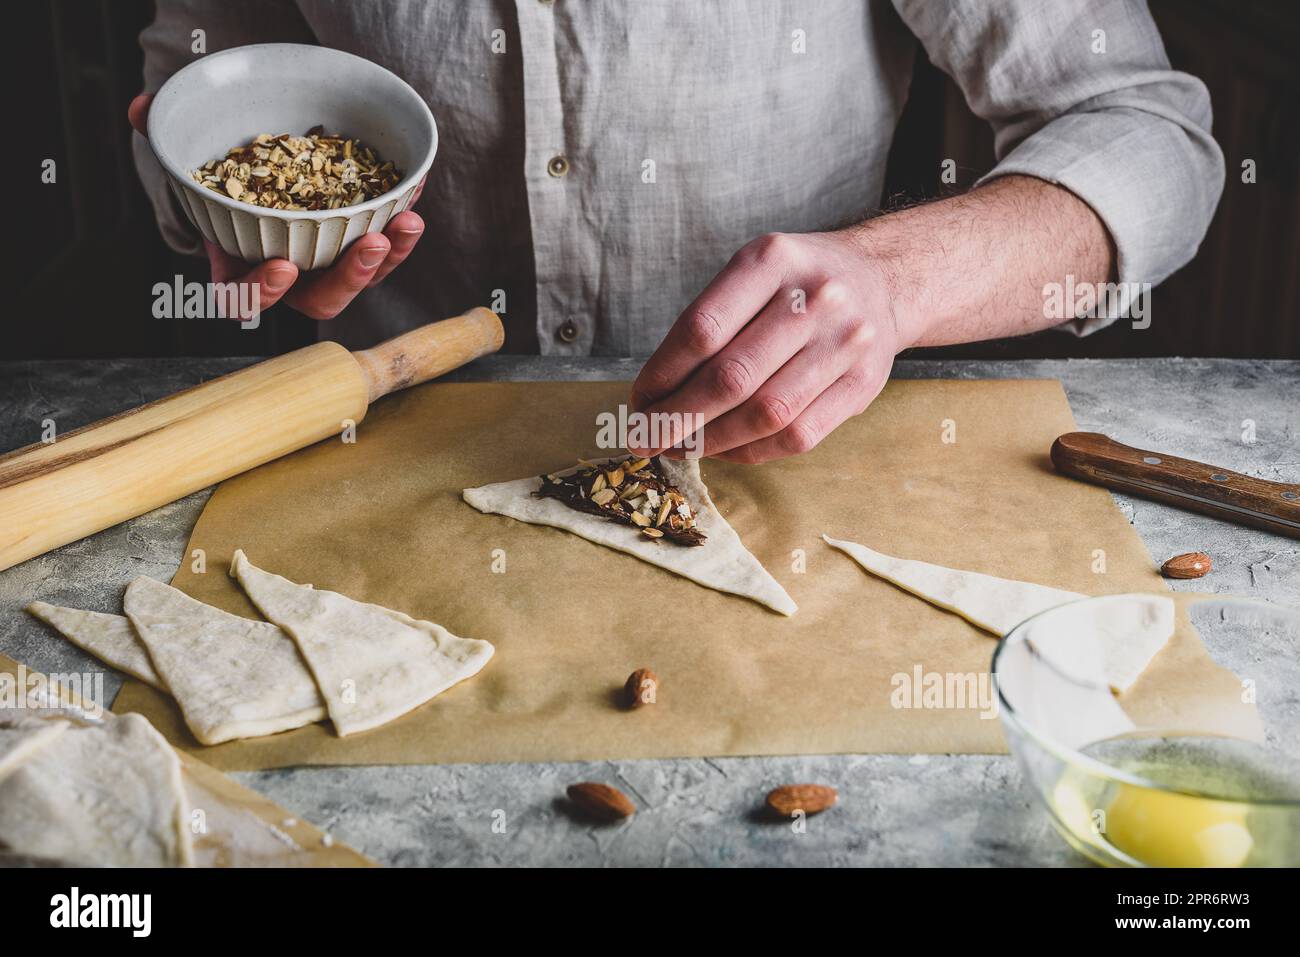 Preparazione di croissant. Baker spolverò le mandorle tritate sopra la nocciola spalmata Foto Stock